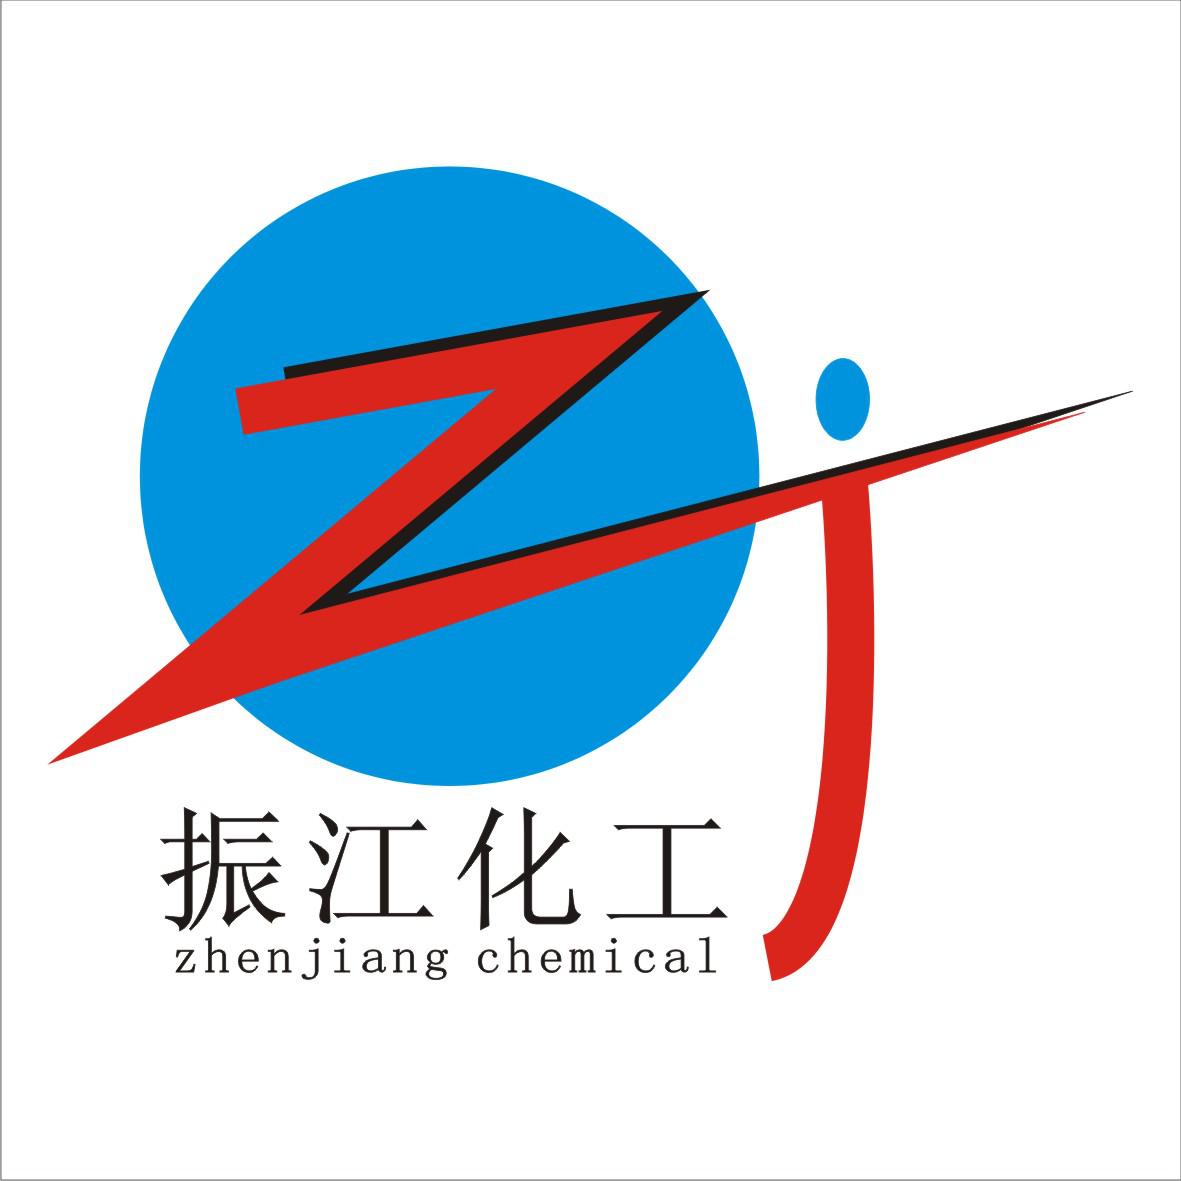 上海振江化工有限公司logo